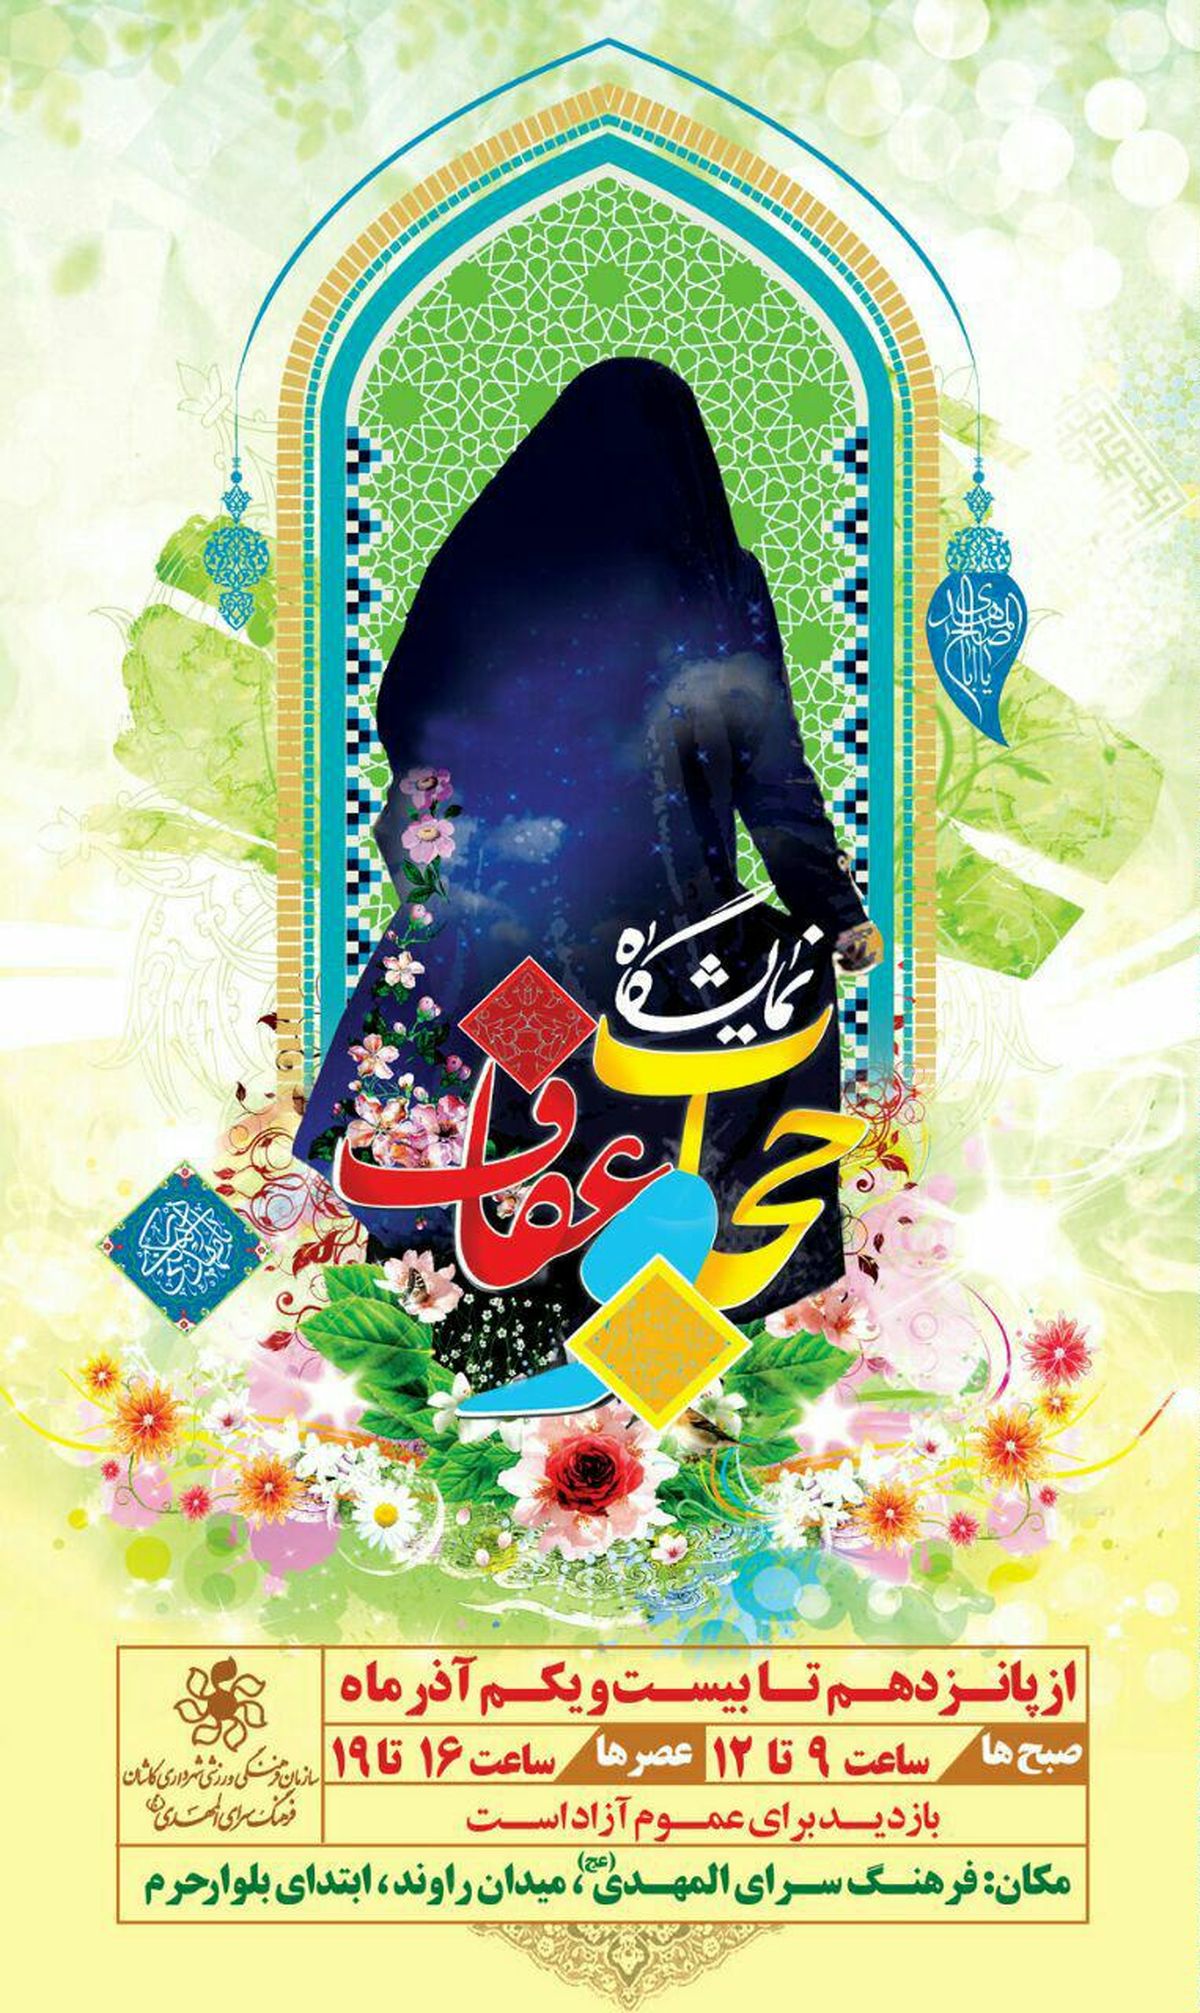 نمایشگاه عفاف و حجاب در کاشان برگزار می شود